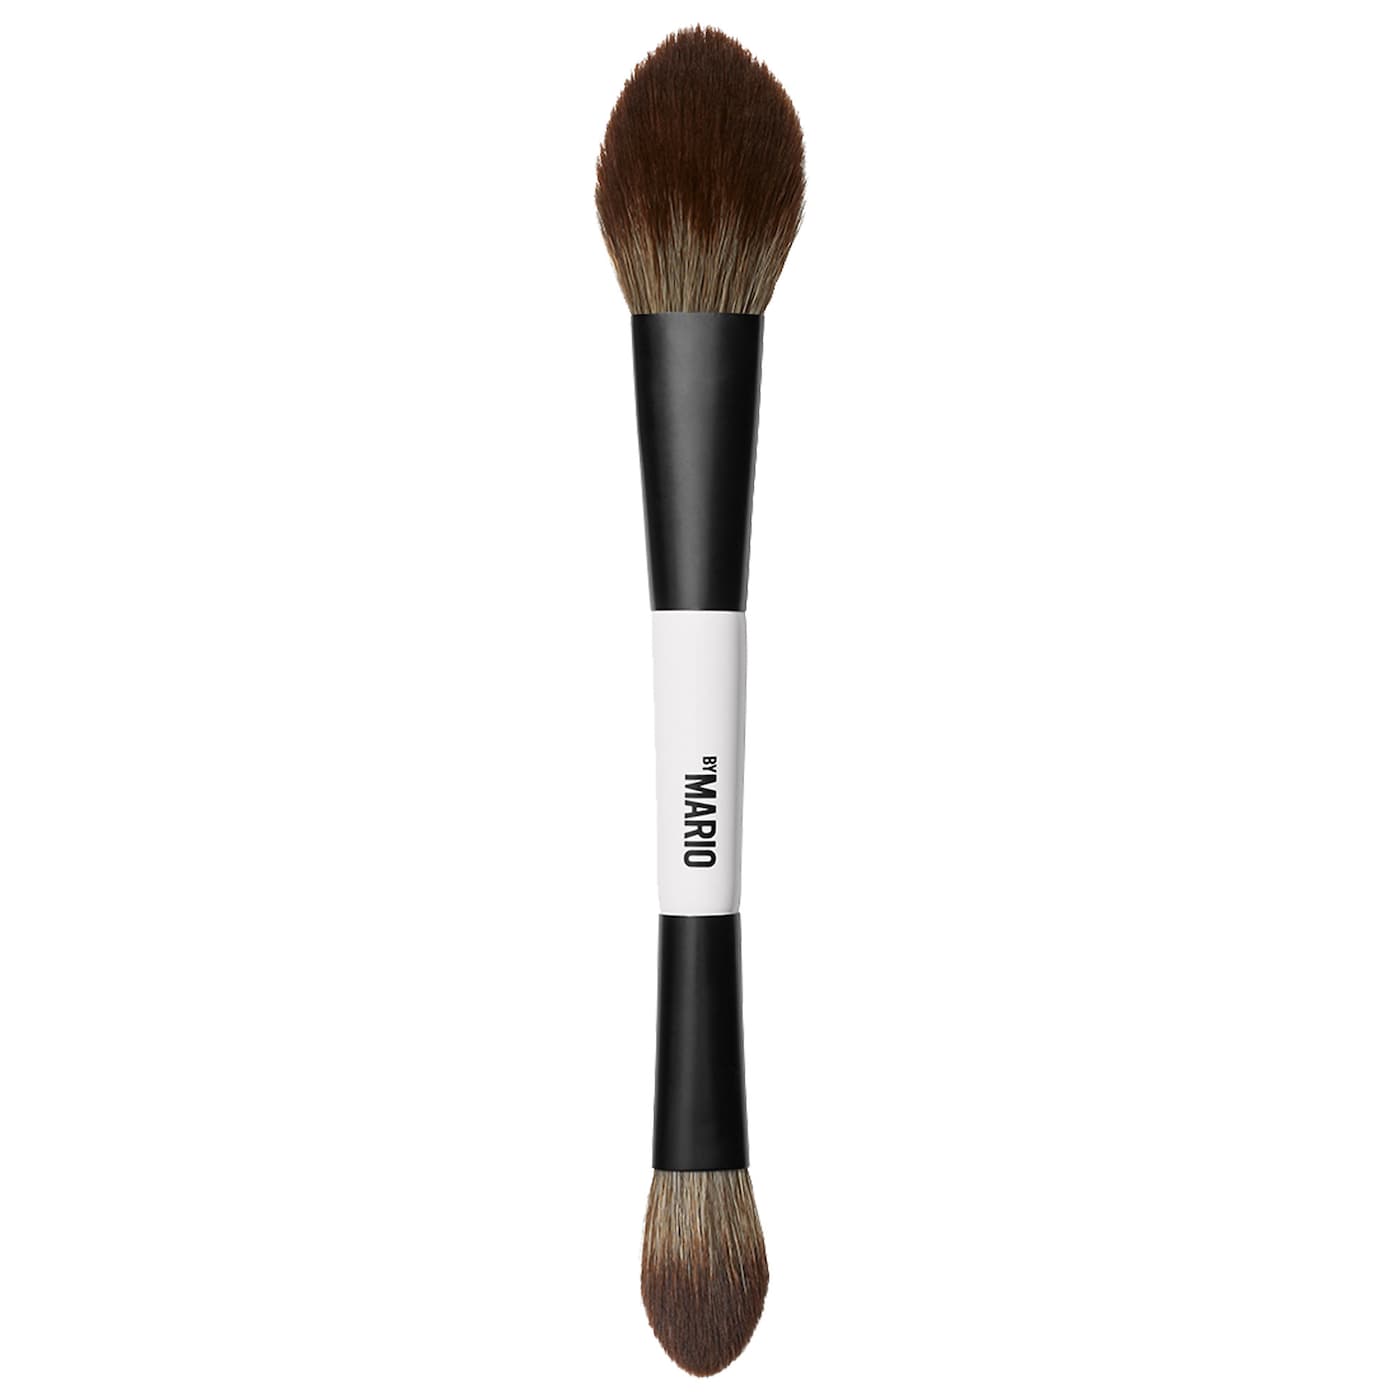 F3 Makeup Brush